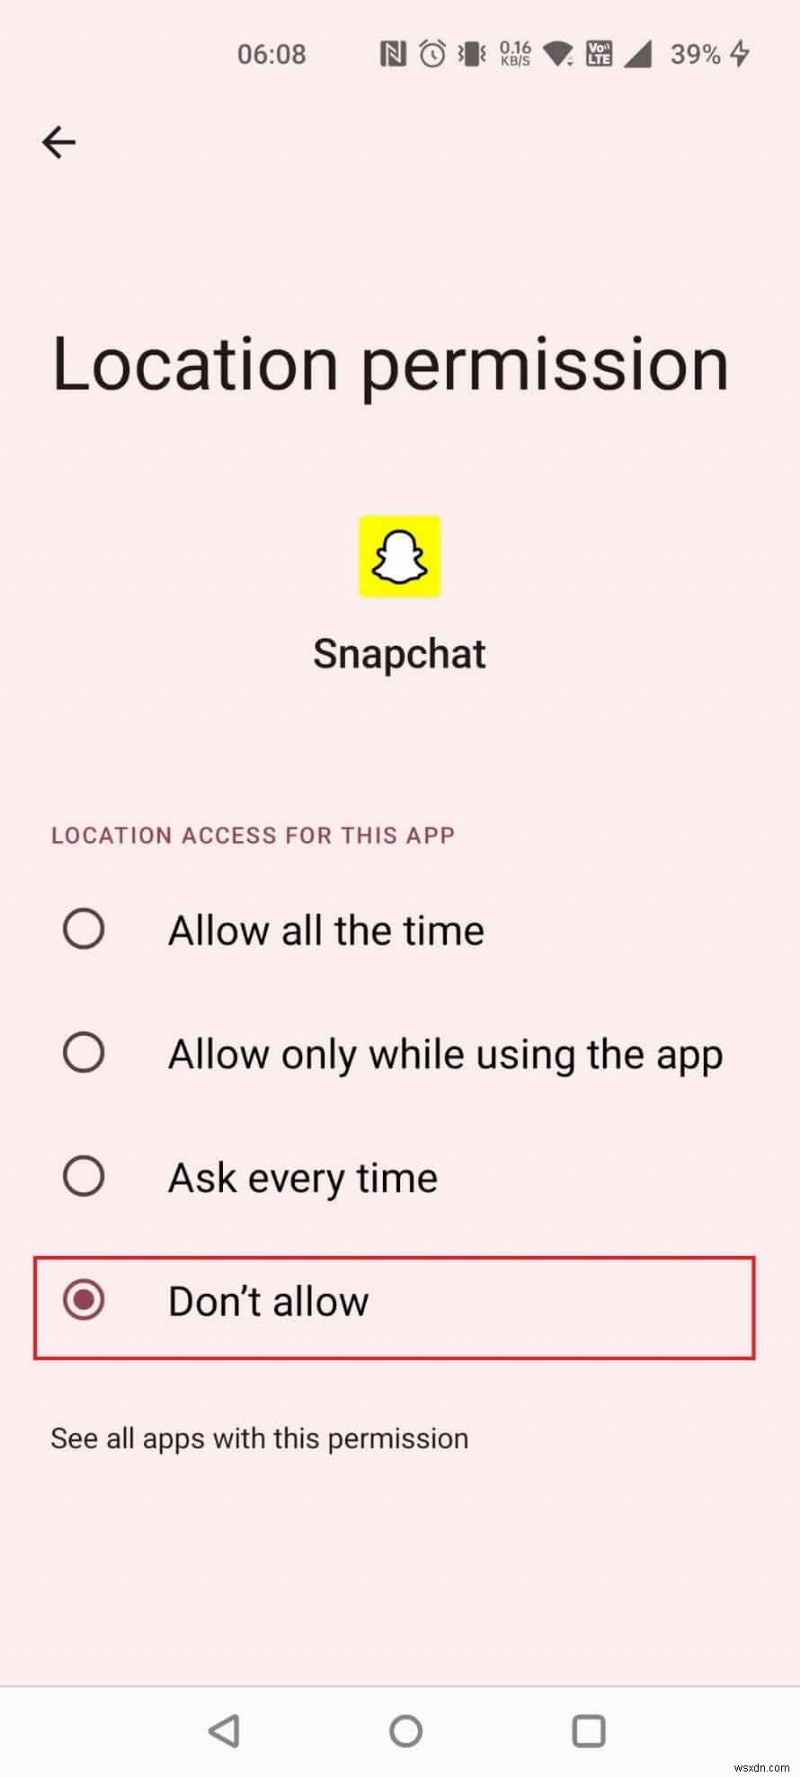 क्या Snapchat को ट्रेस किया जा सकता है?